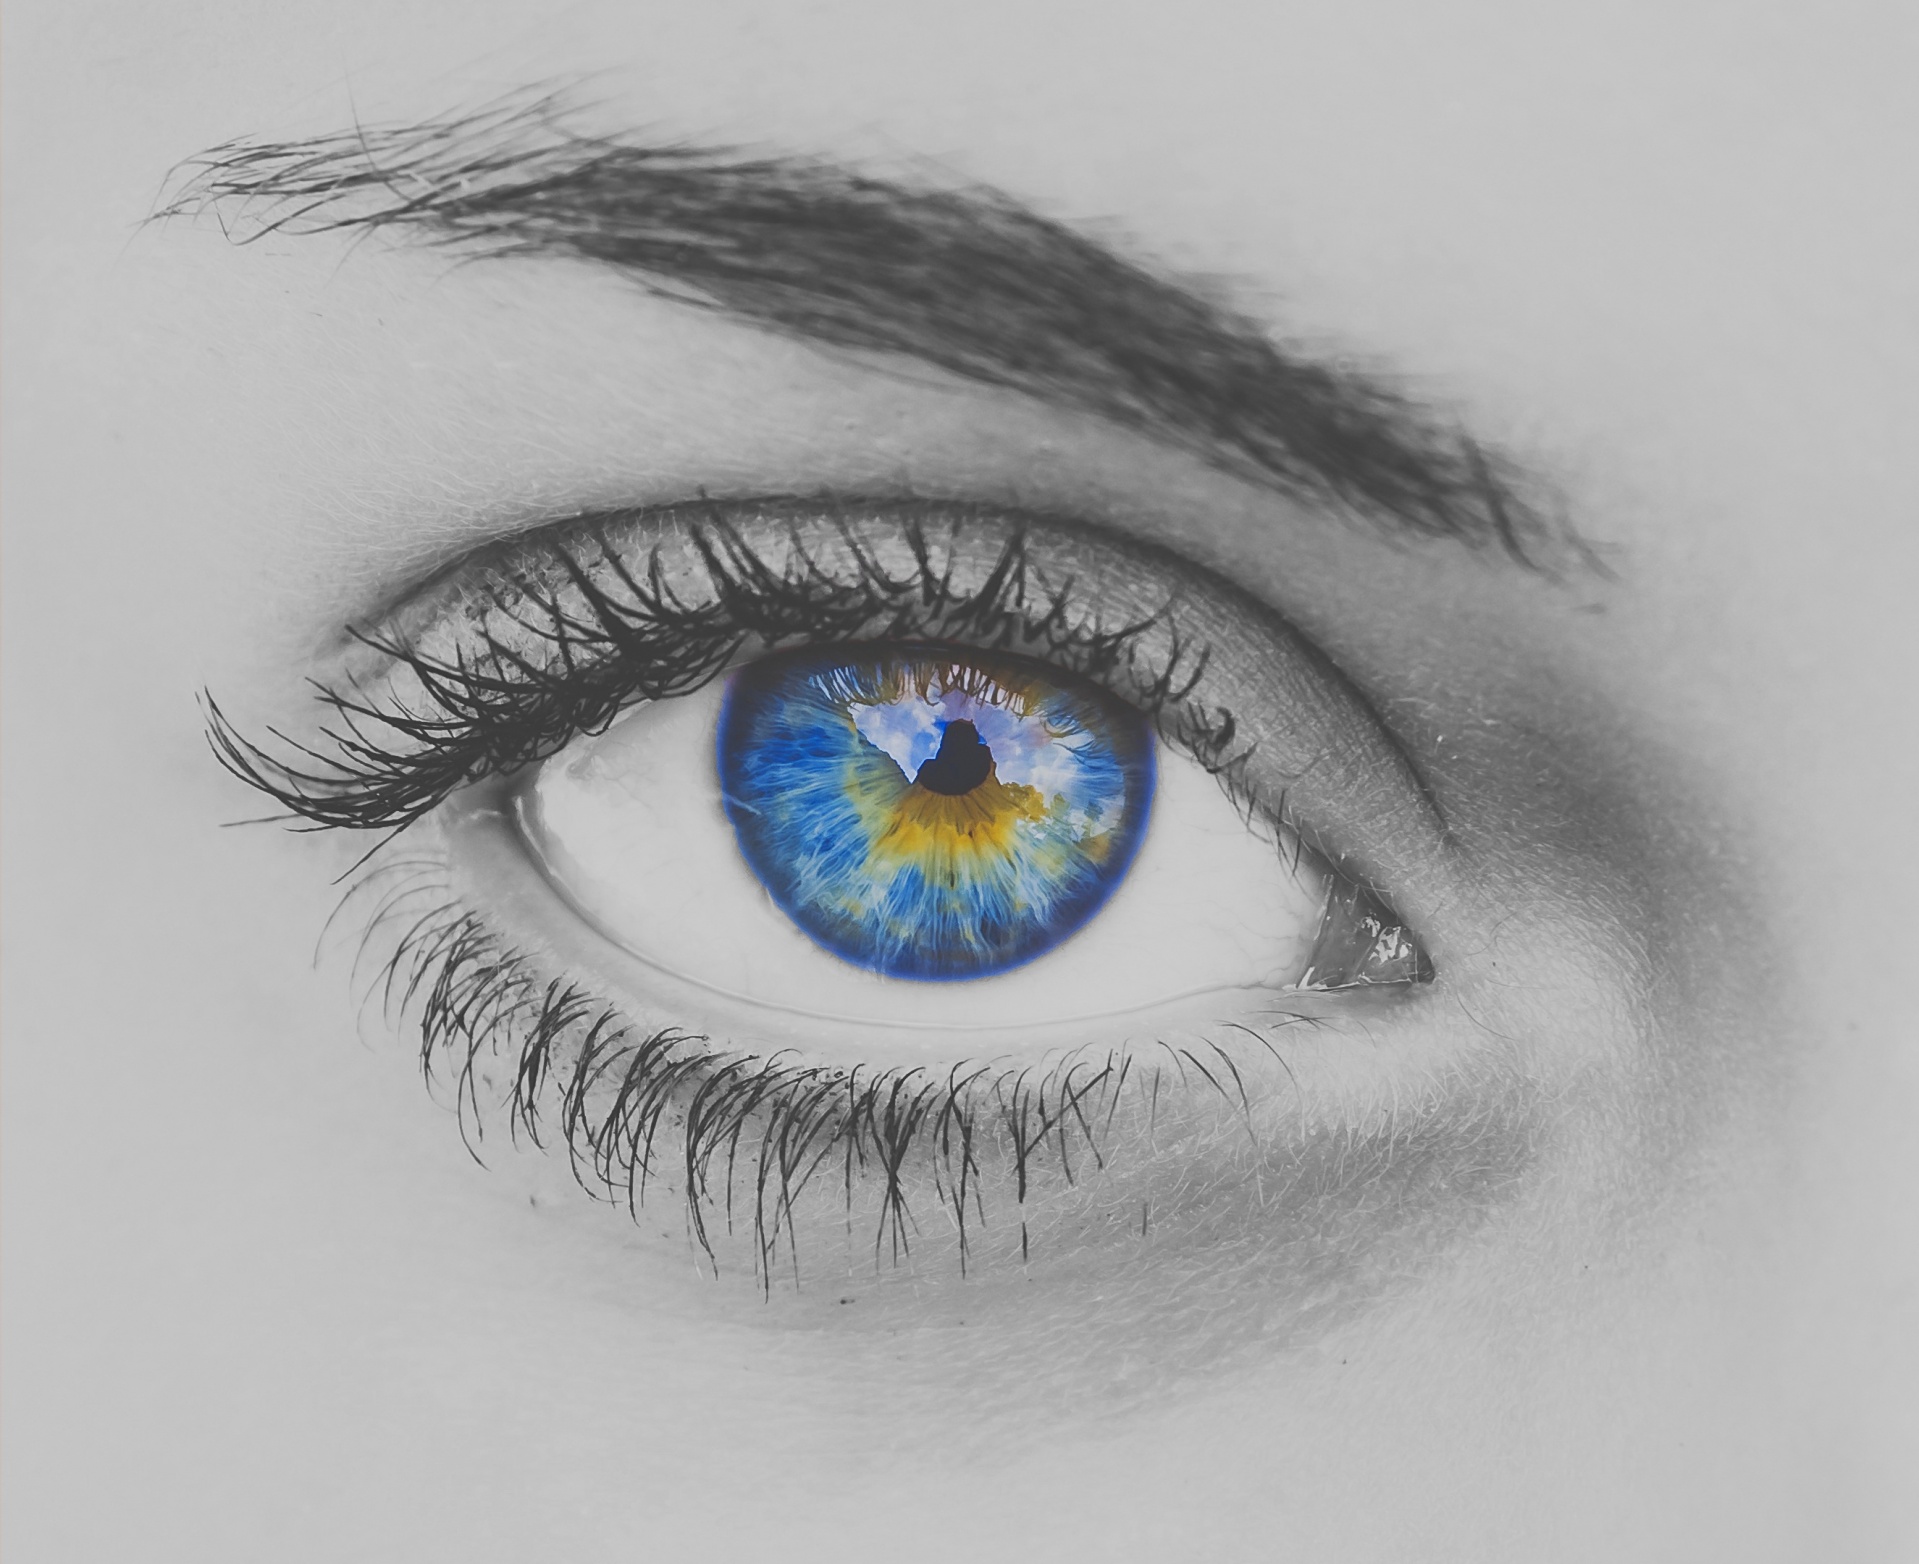 Blue eye of a woman